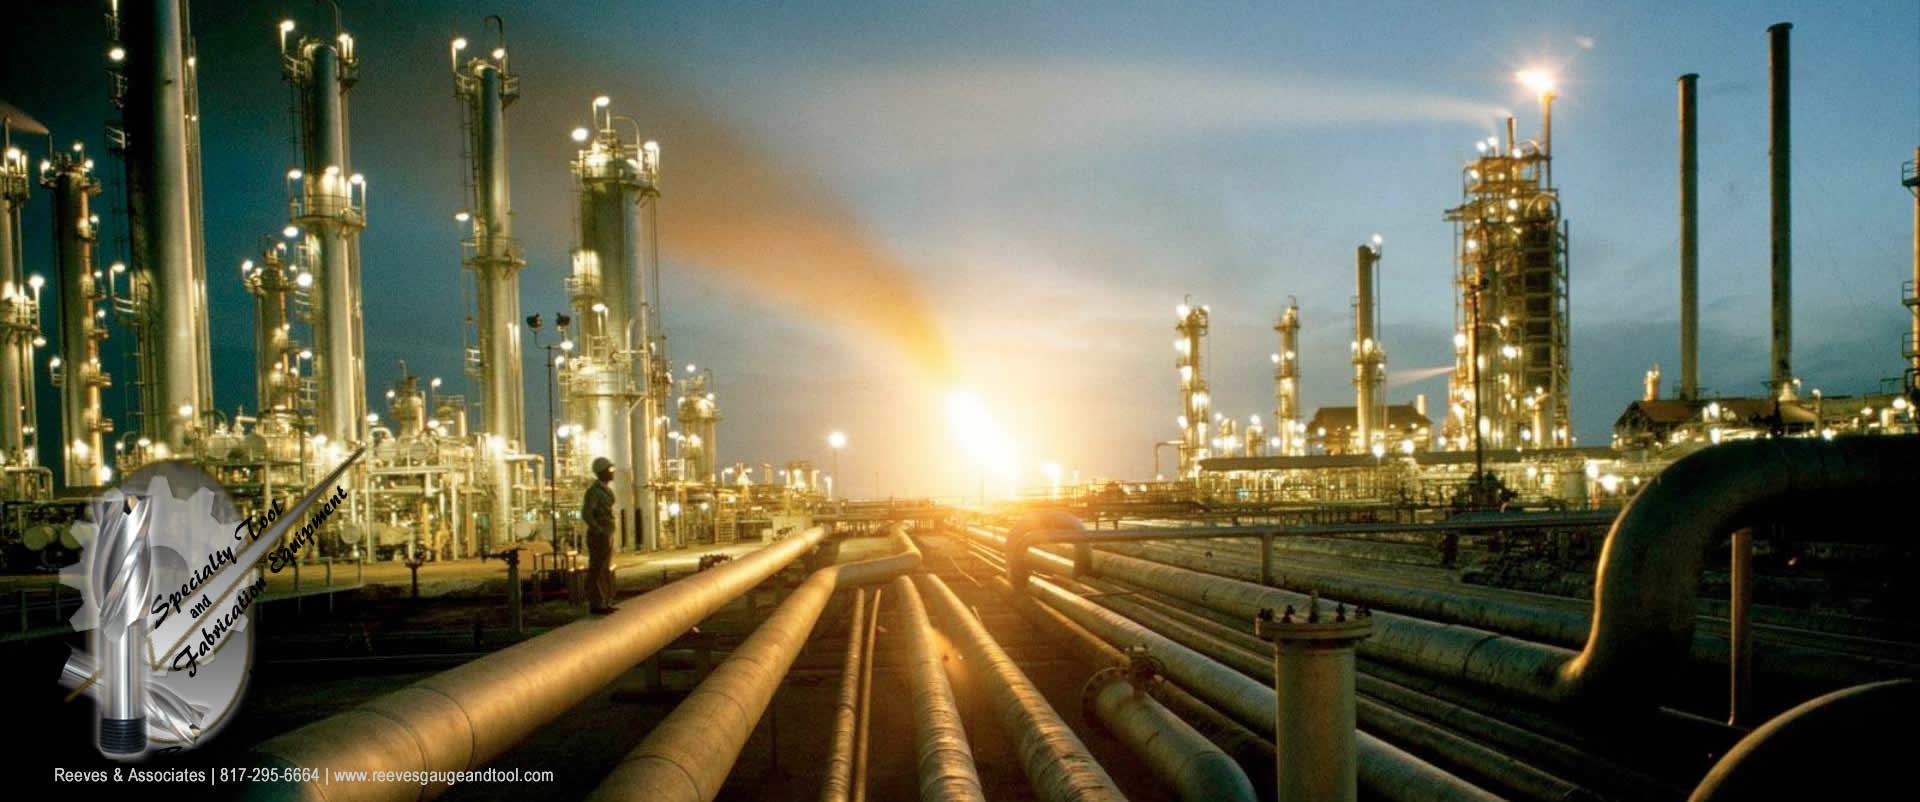 Reeves & Associates / Gas, Oil Industry | www.reevesgaugeandtool.com